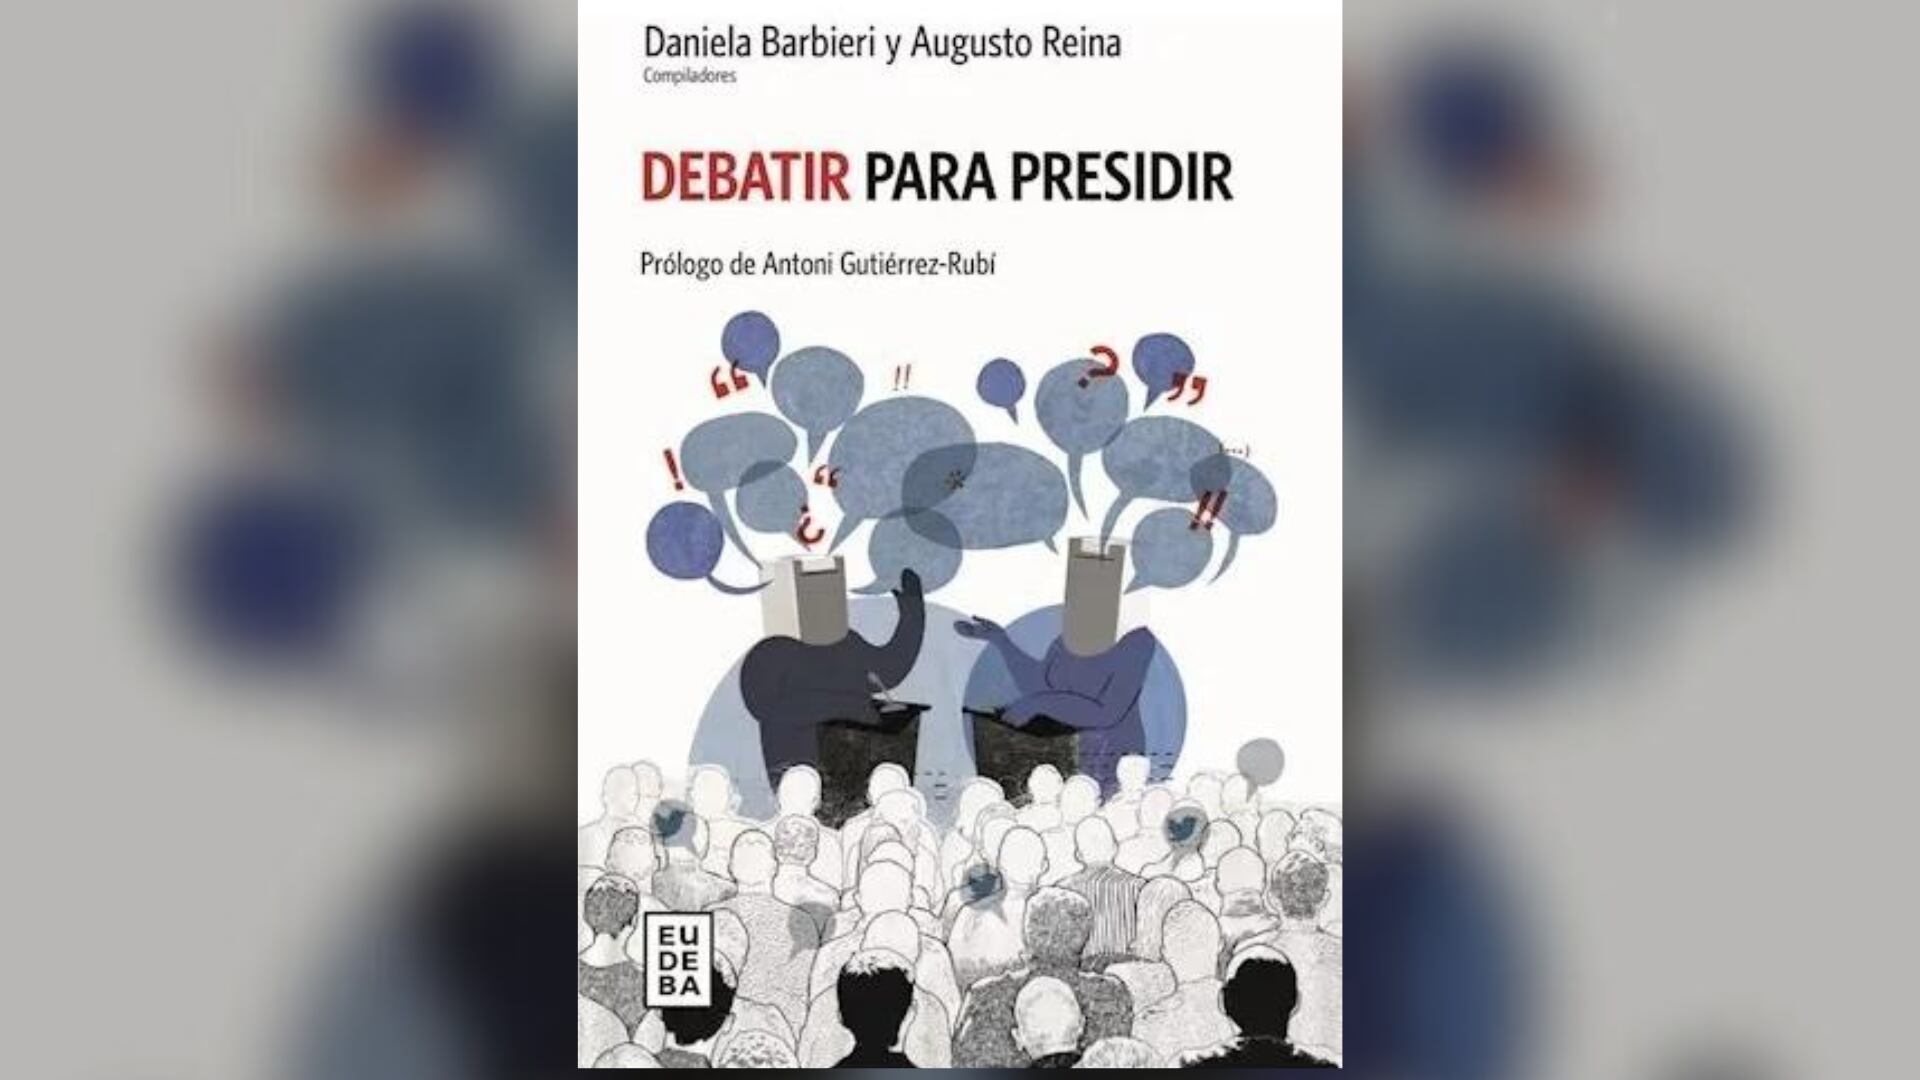 Debatir para presidir, publicado este año por Eudeba, la editorial de la Universidad de Buenos Aires.